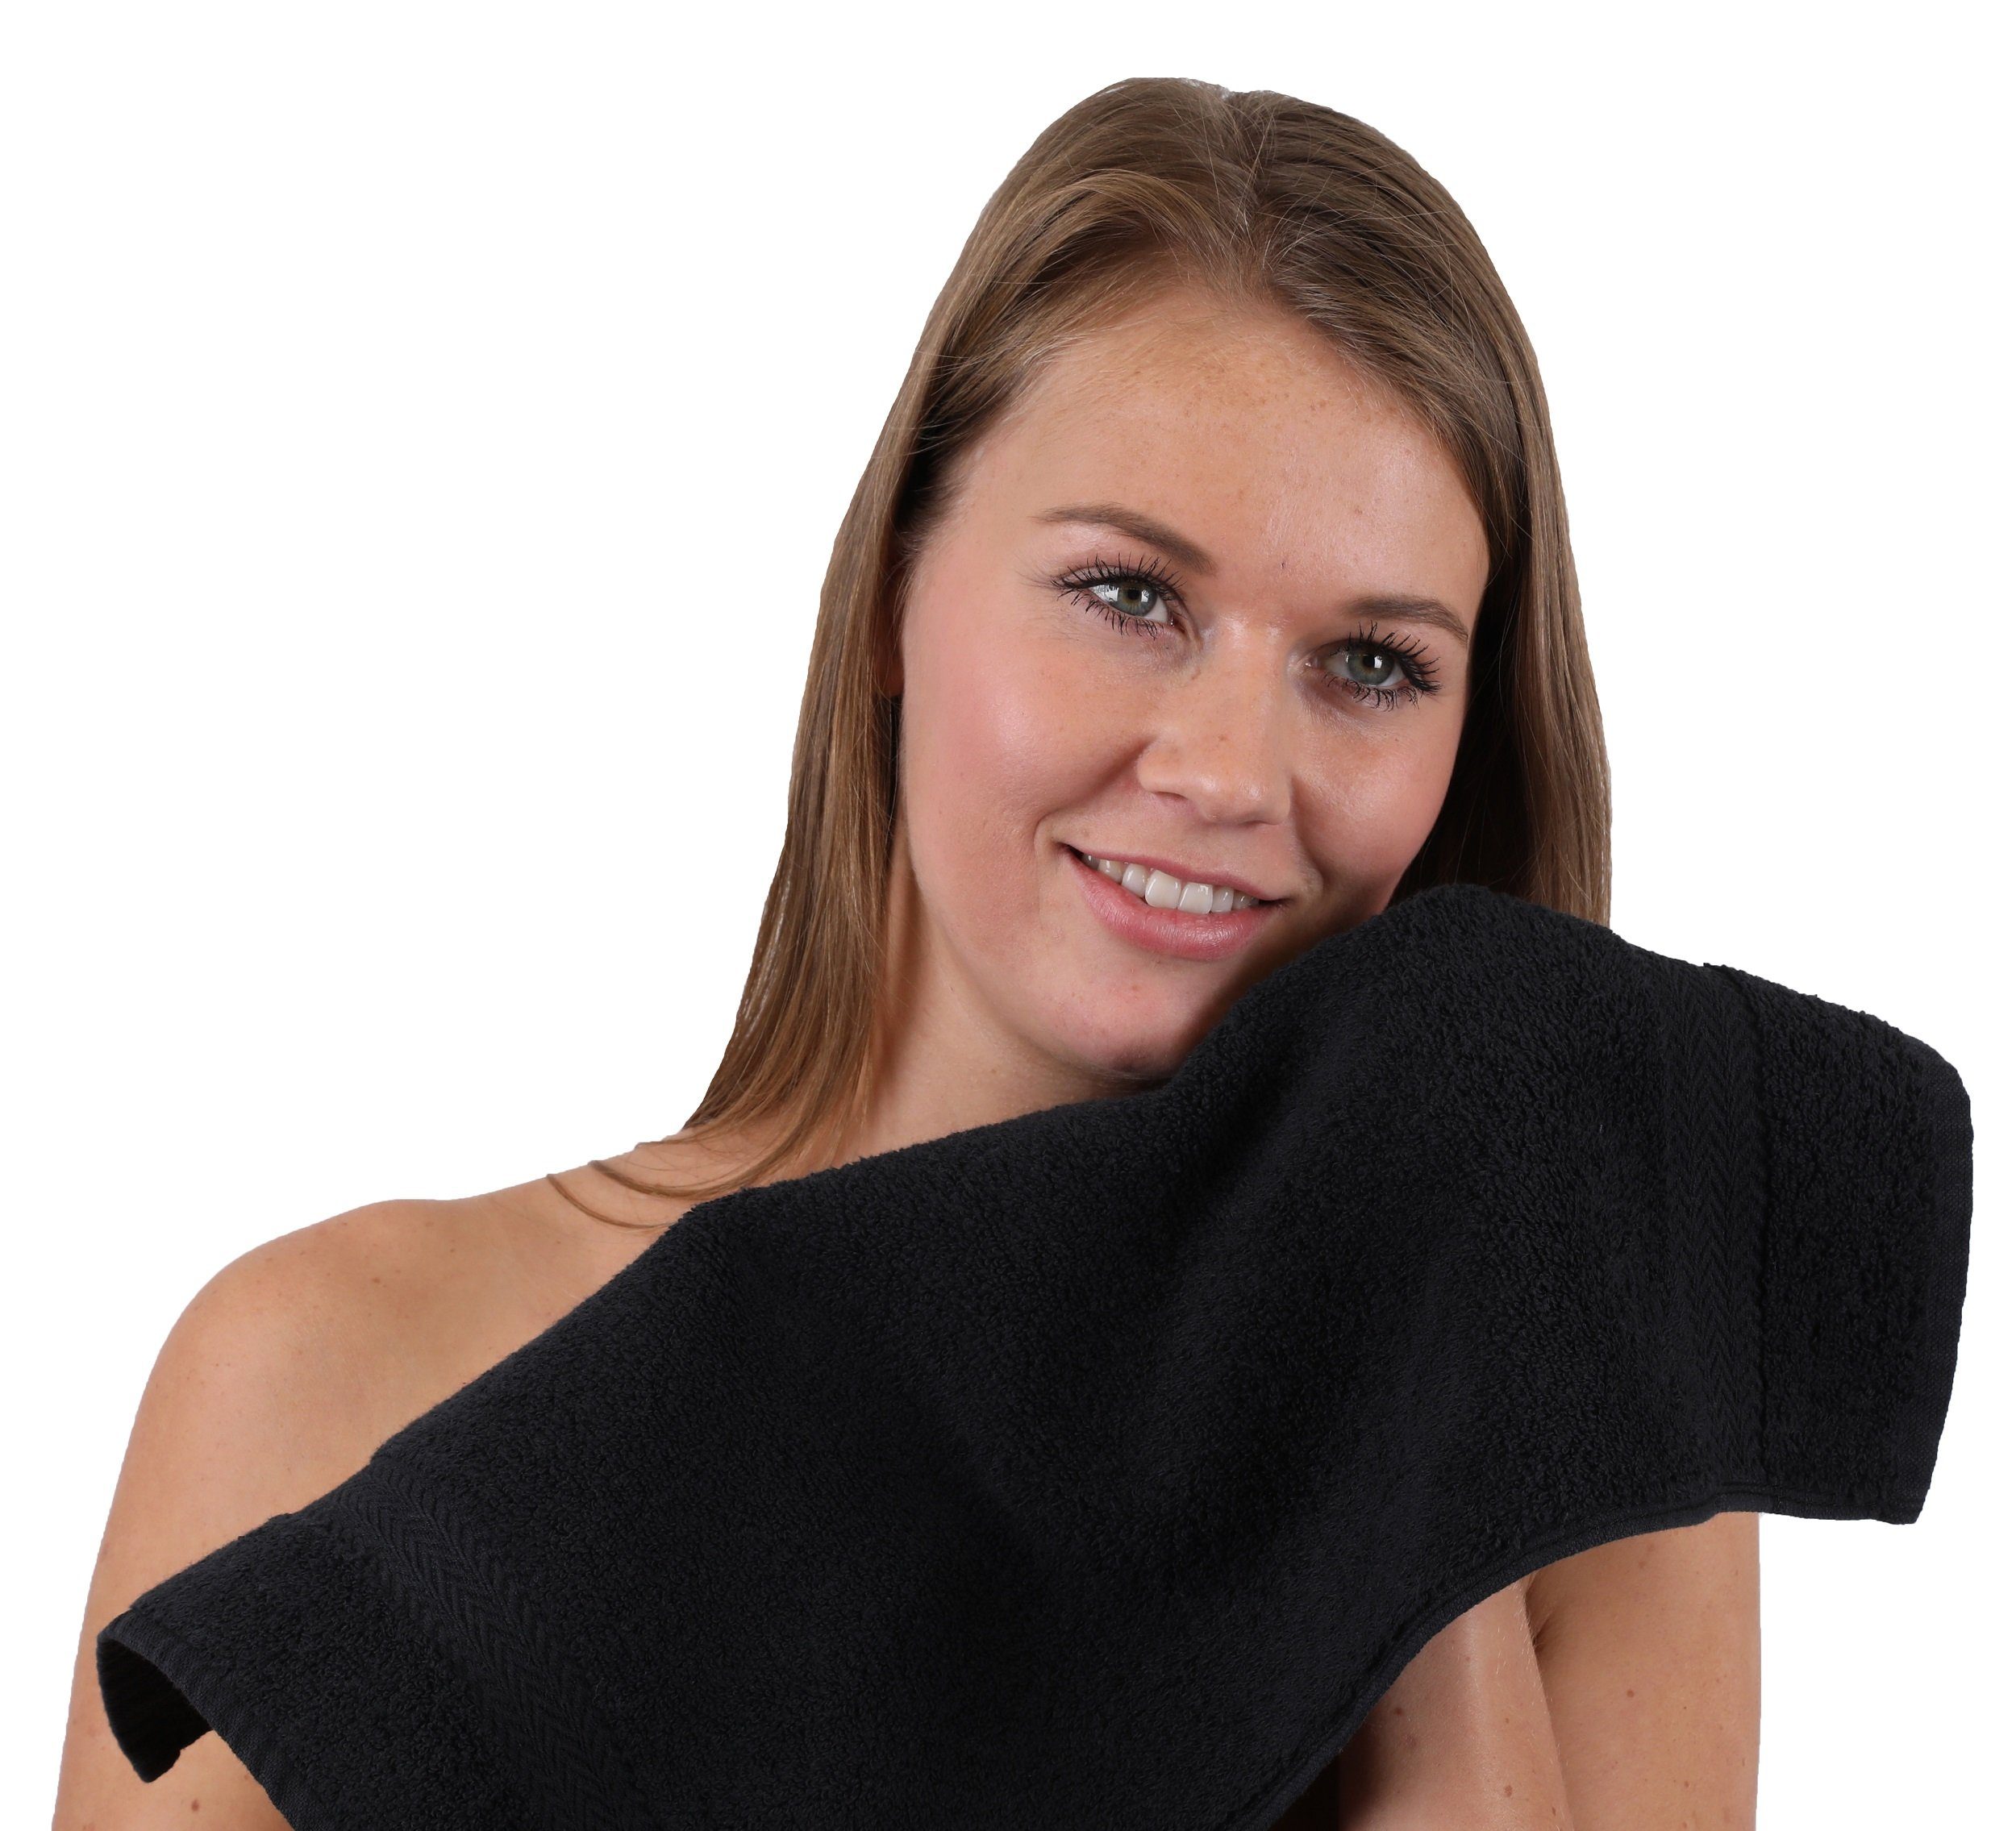 Betz Set royalblau Handtuch 100% schwarz, und Baumwolle Classic 10-TLG. Handtuch-Set Farbe